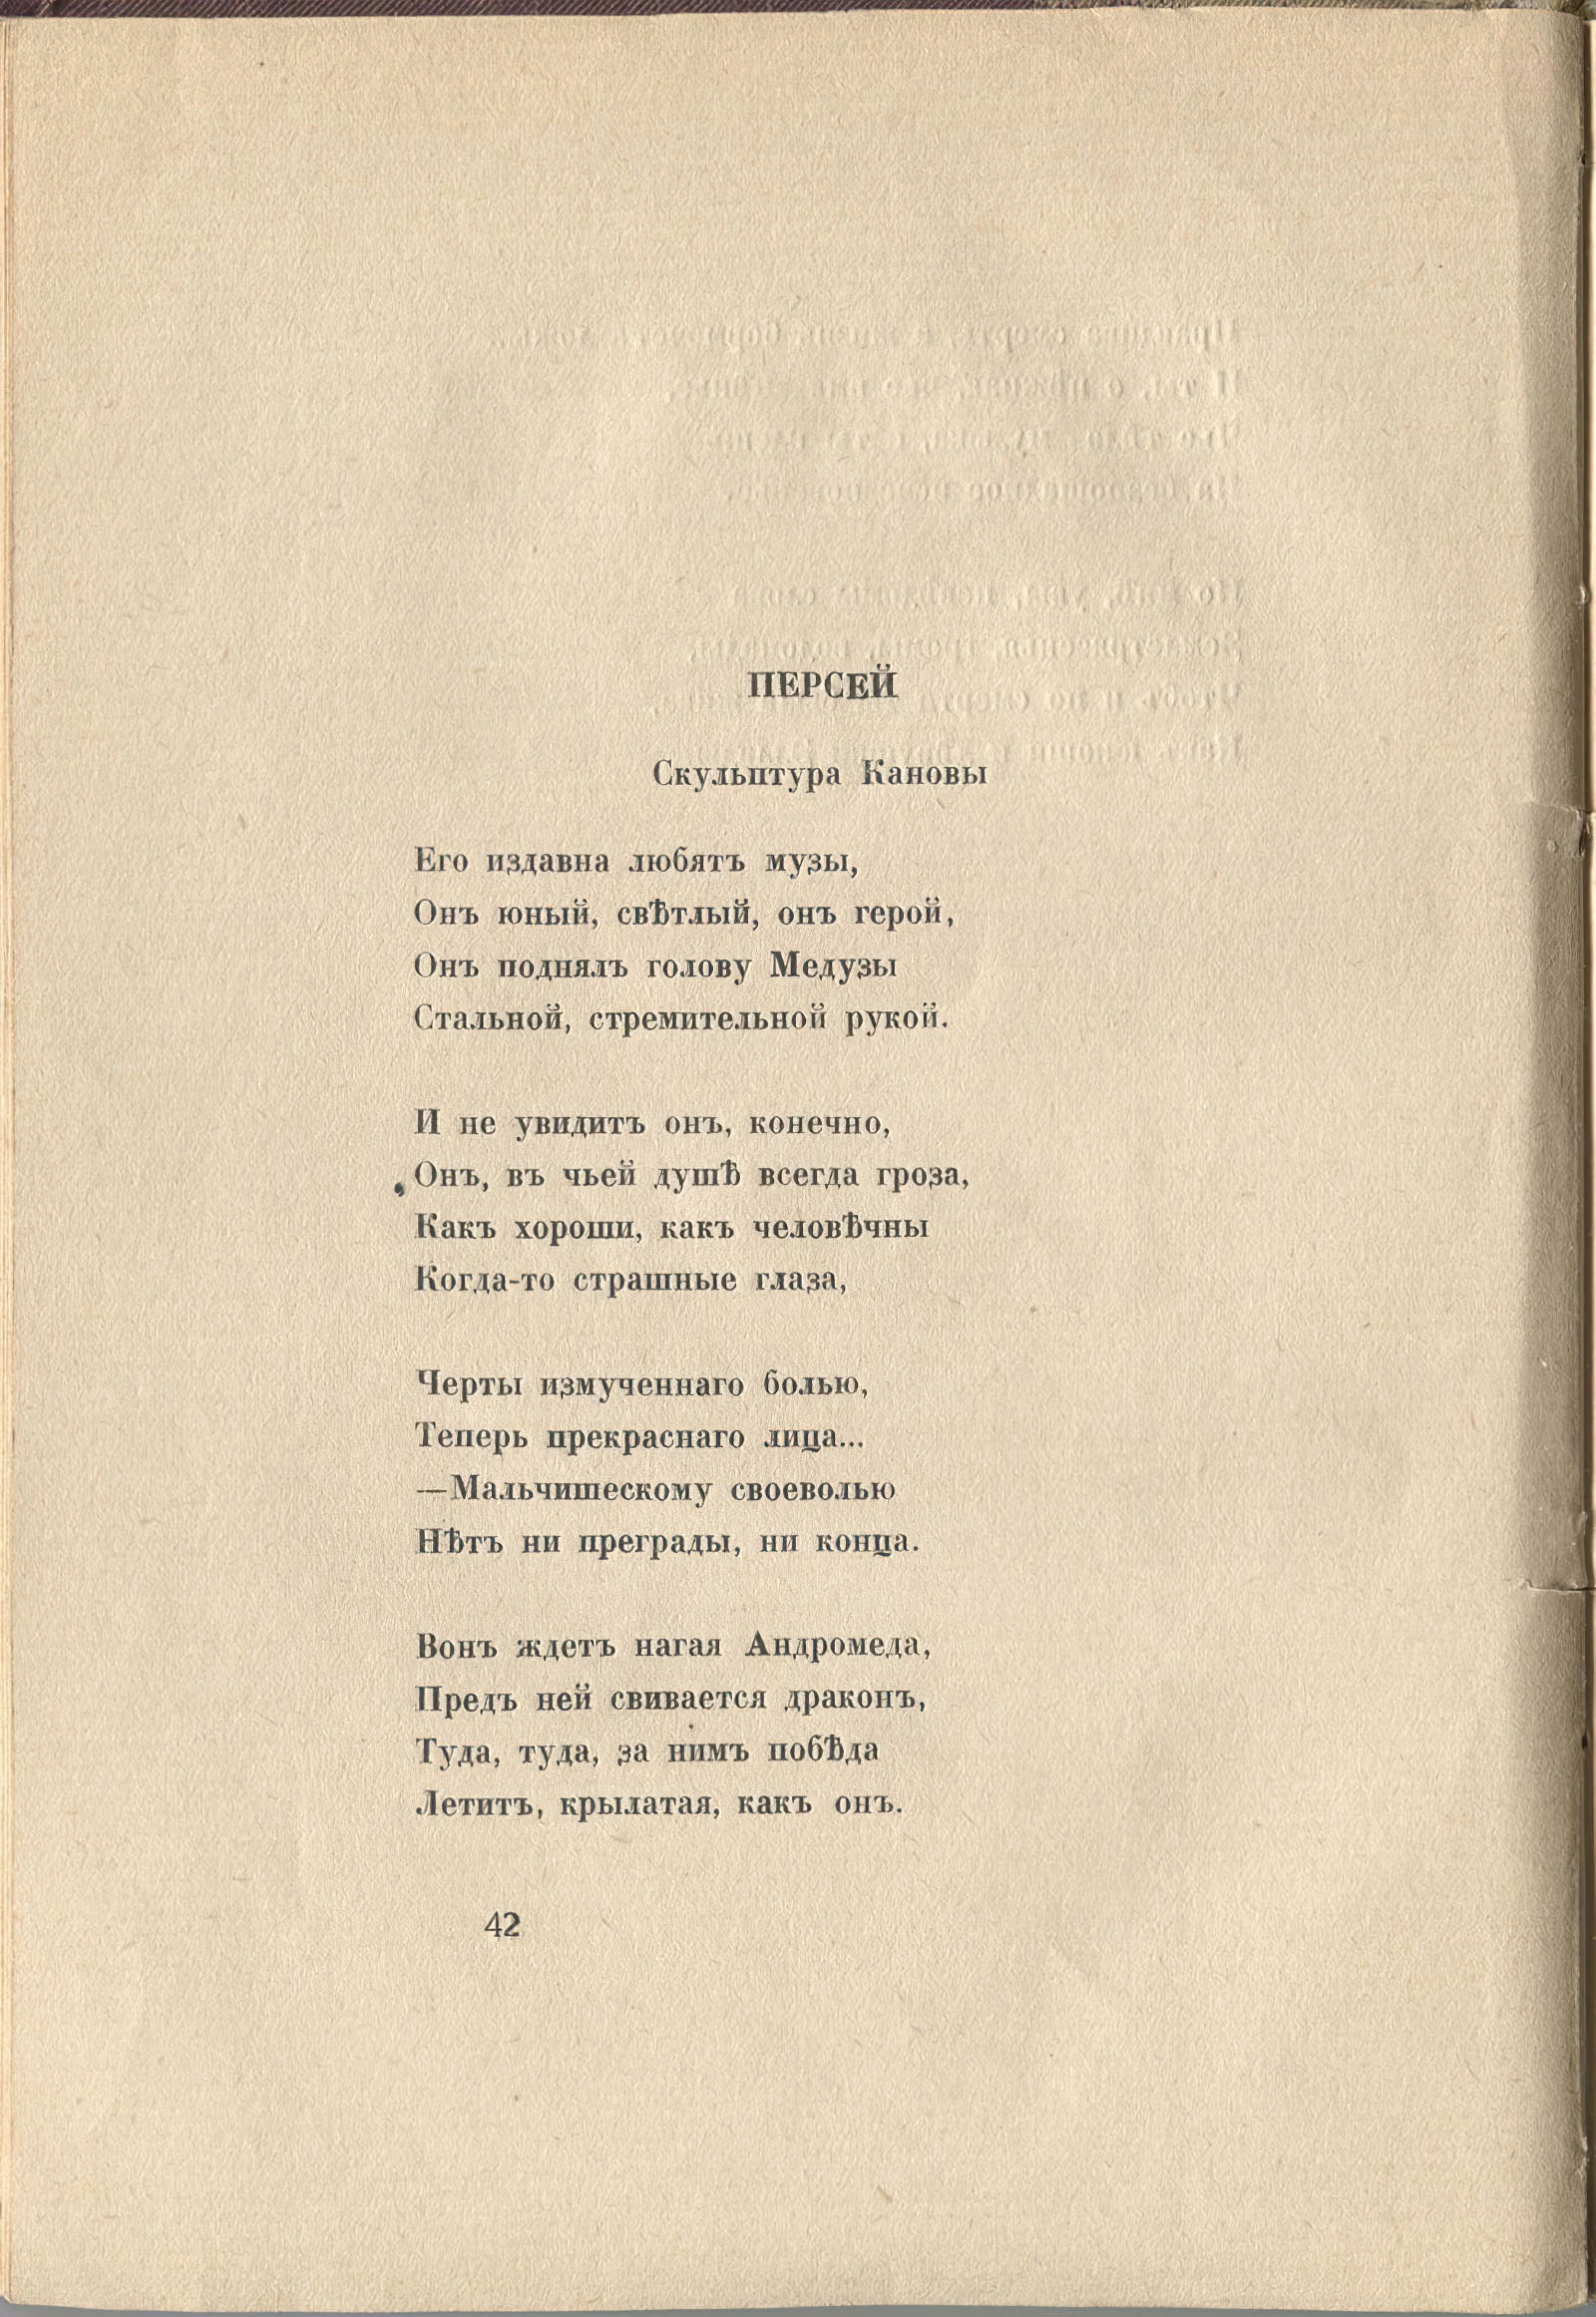 Колчан (1916). Персей. Скульптура Кановы. Страница 42